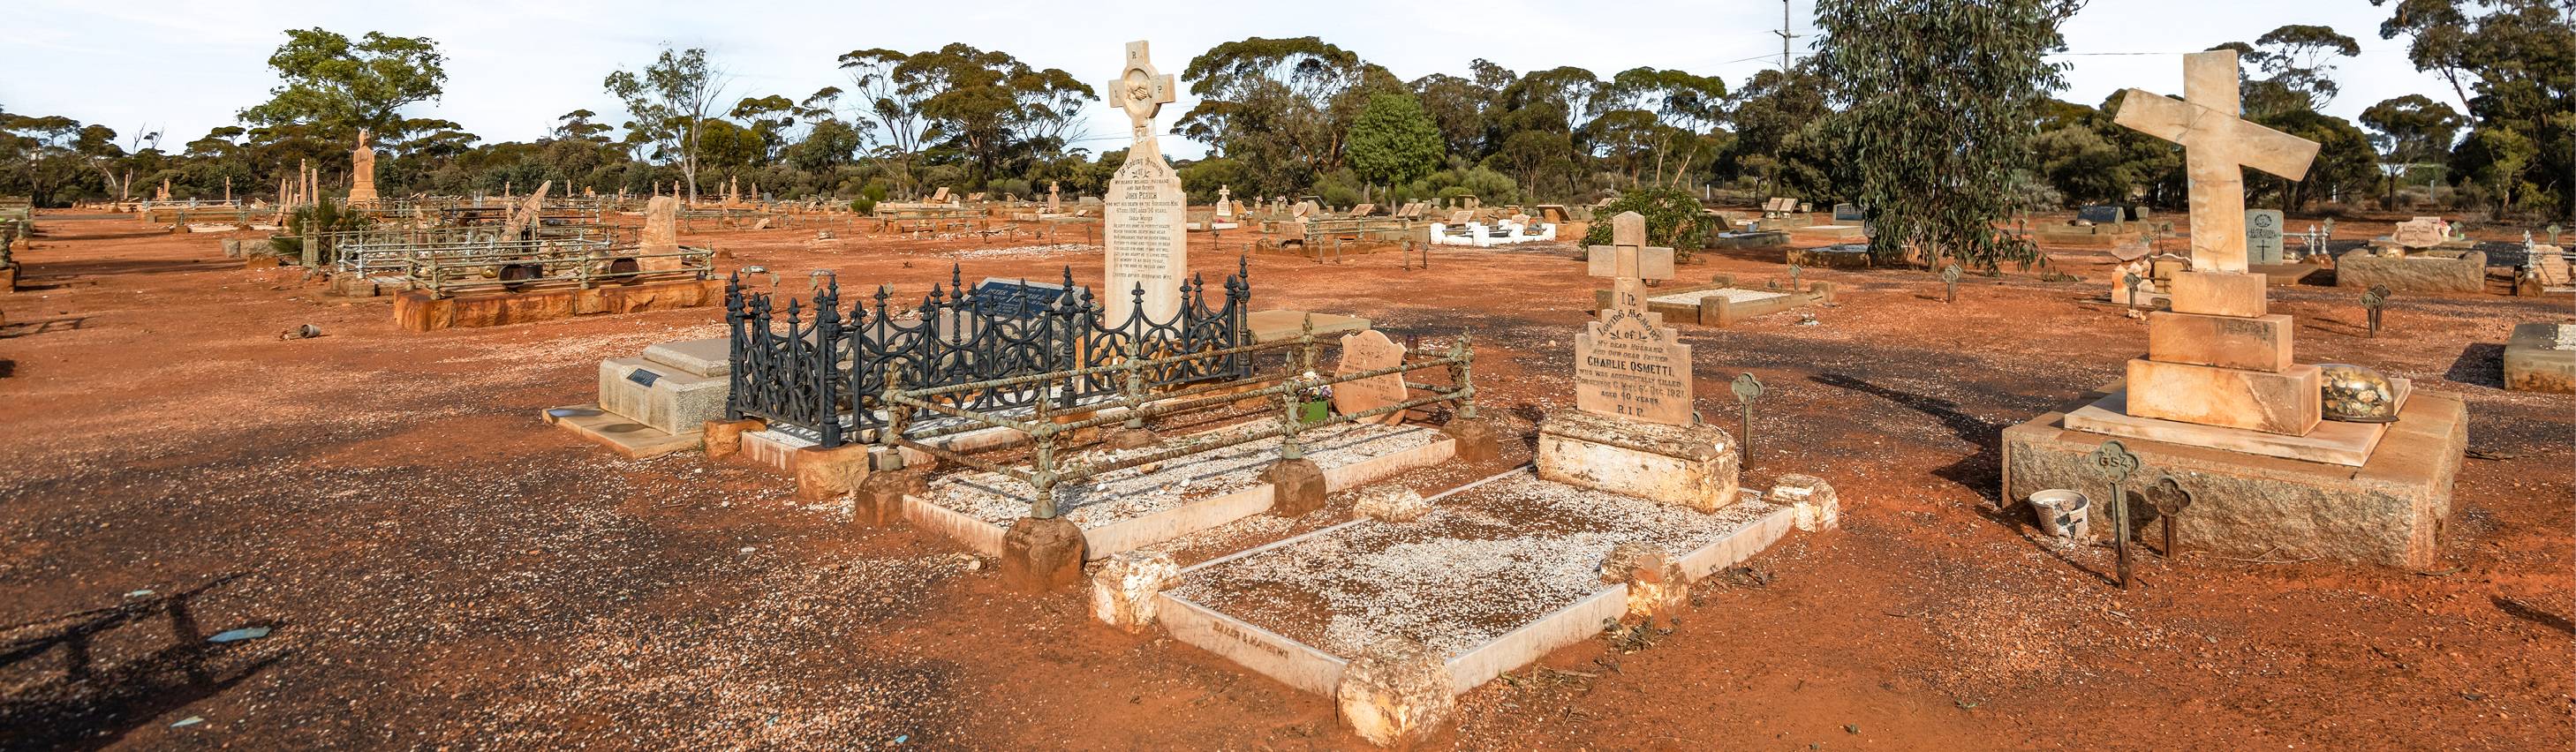 Kalgoorlie Cemetery Board | Links